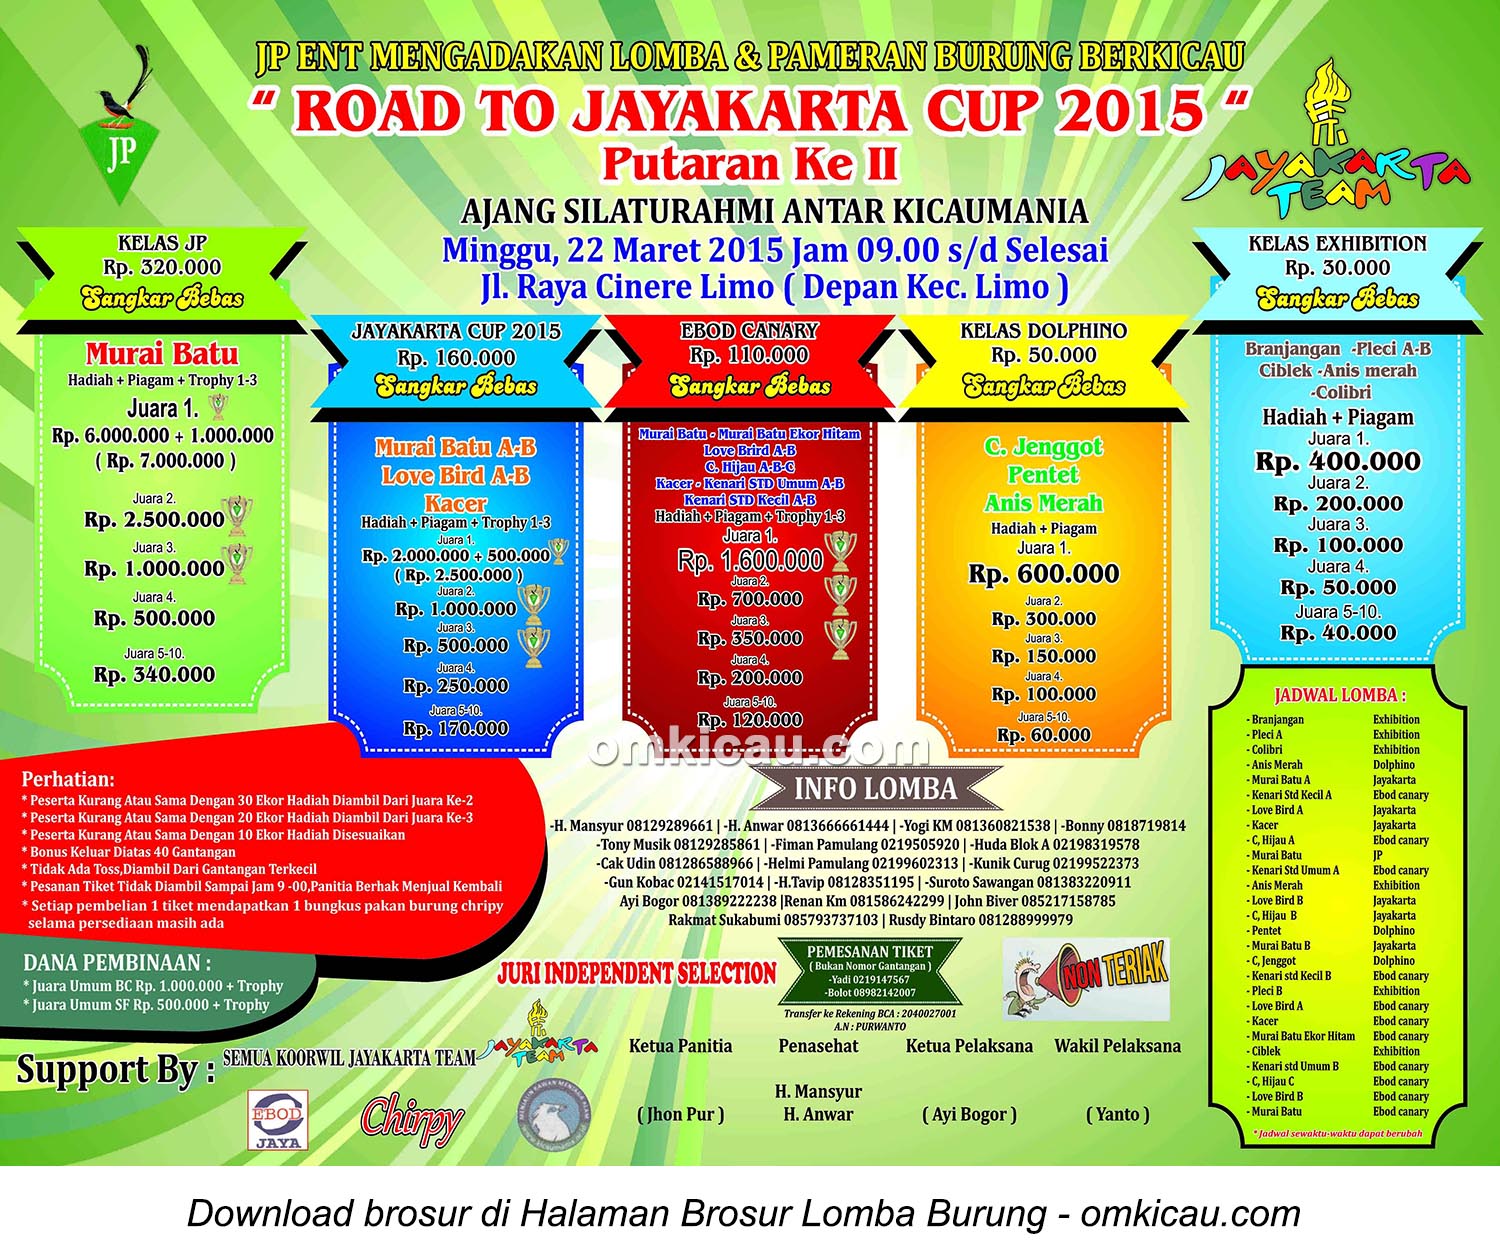 Brosur Lomba Burung Berkicau Road to Jayakarta Cup - JP Enterprise, Depok, 22 Maret 2015